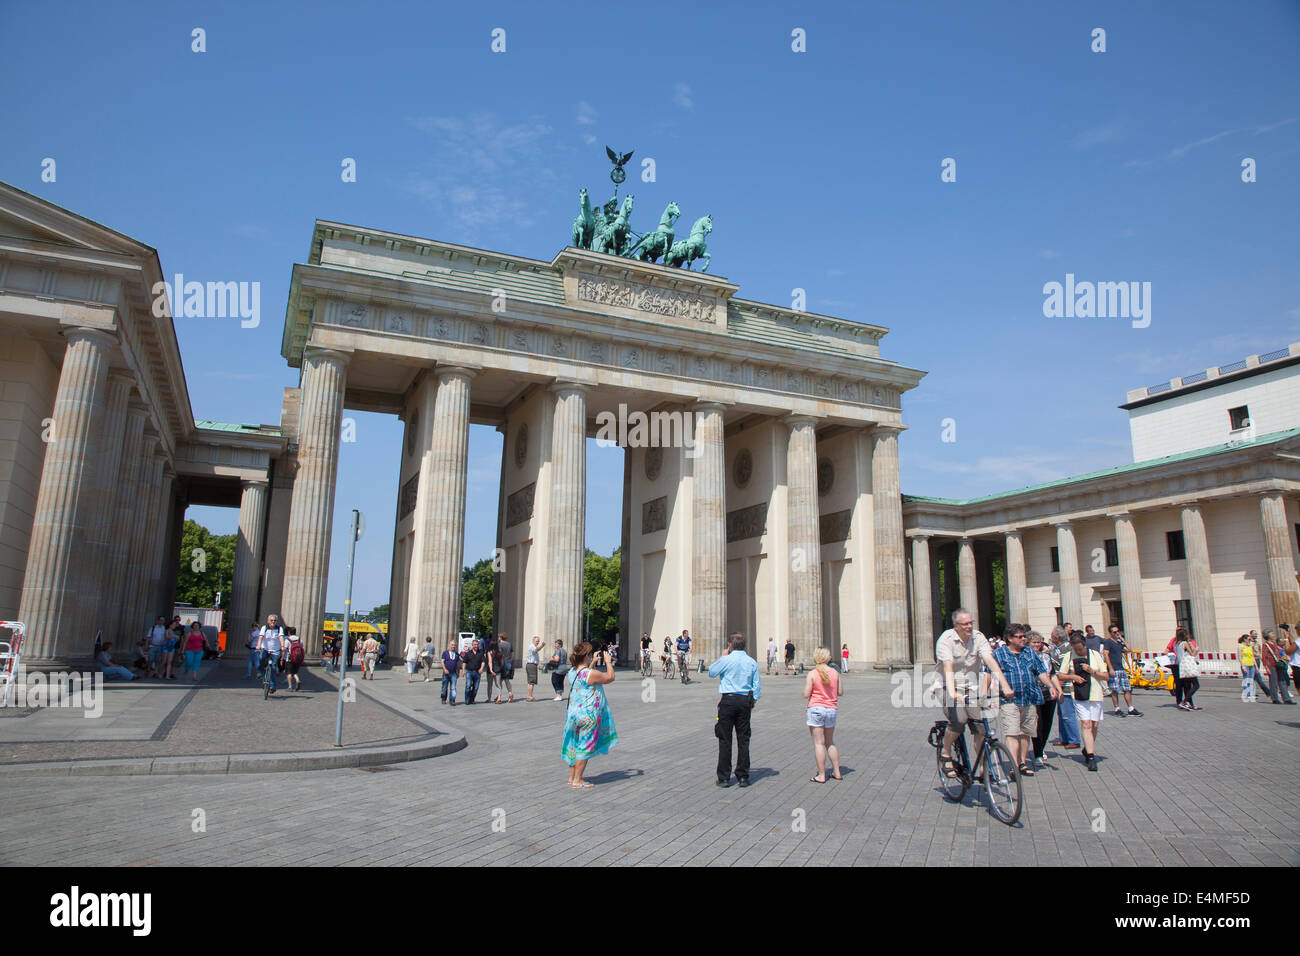 Germany, Berlin, Mitte, Brandenburg Gate in Pariser Platz. Stock Photo